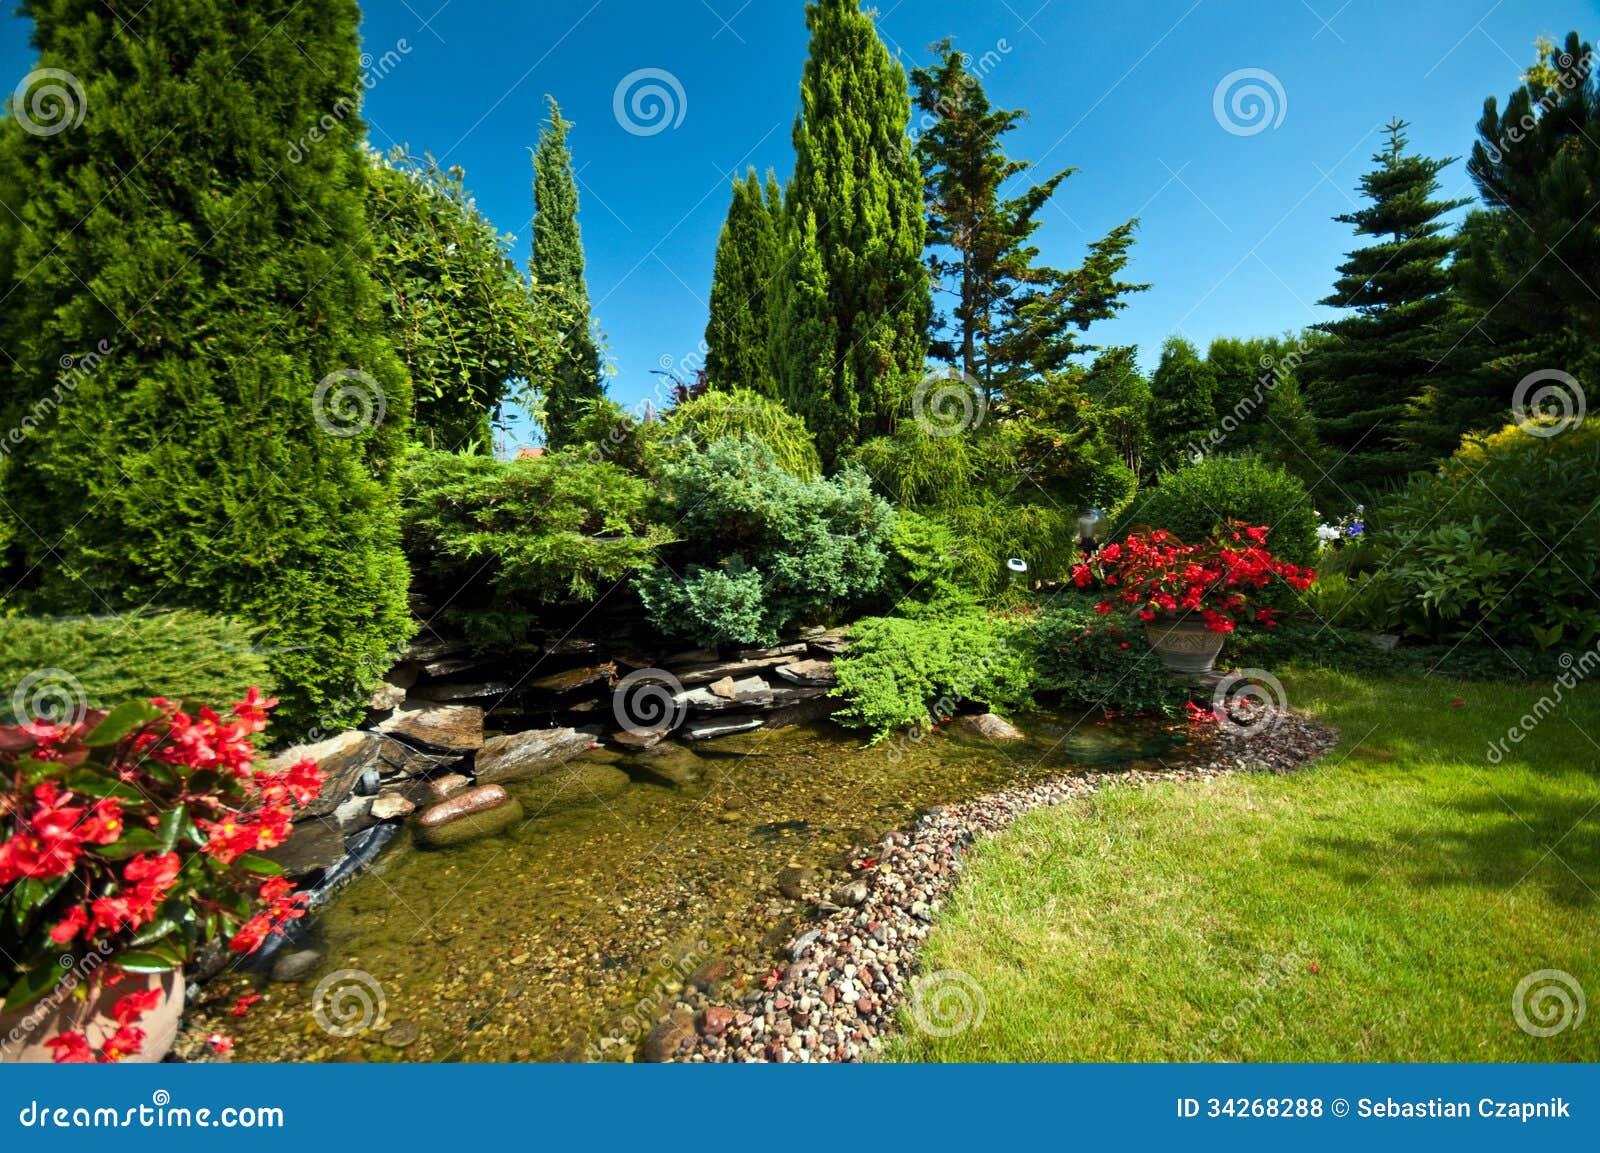 pond in landscaped garden